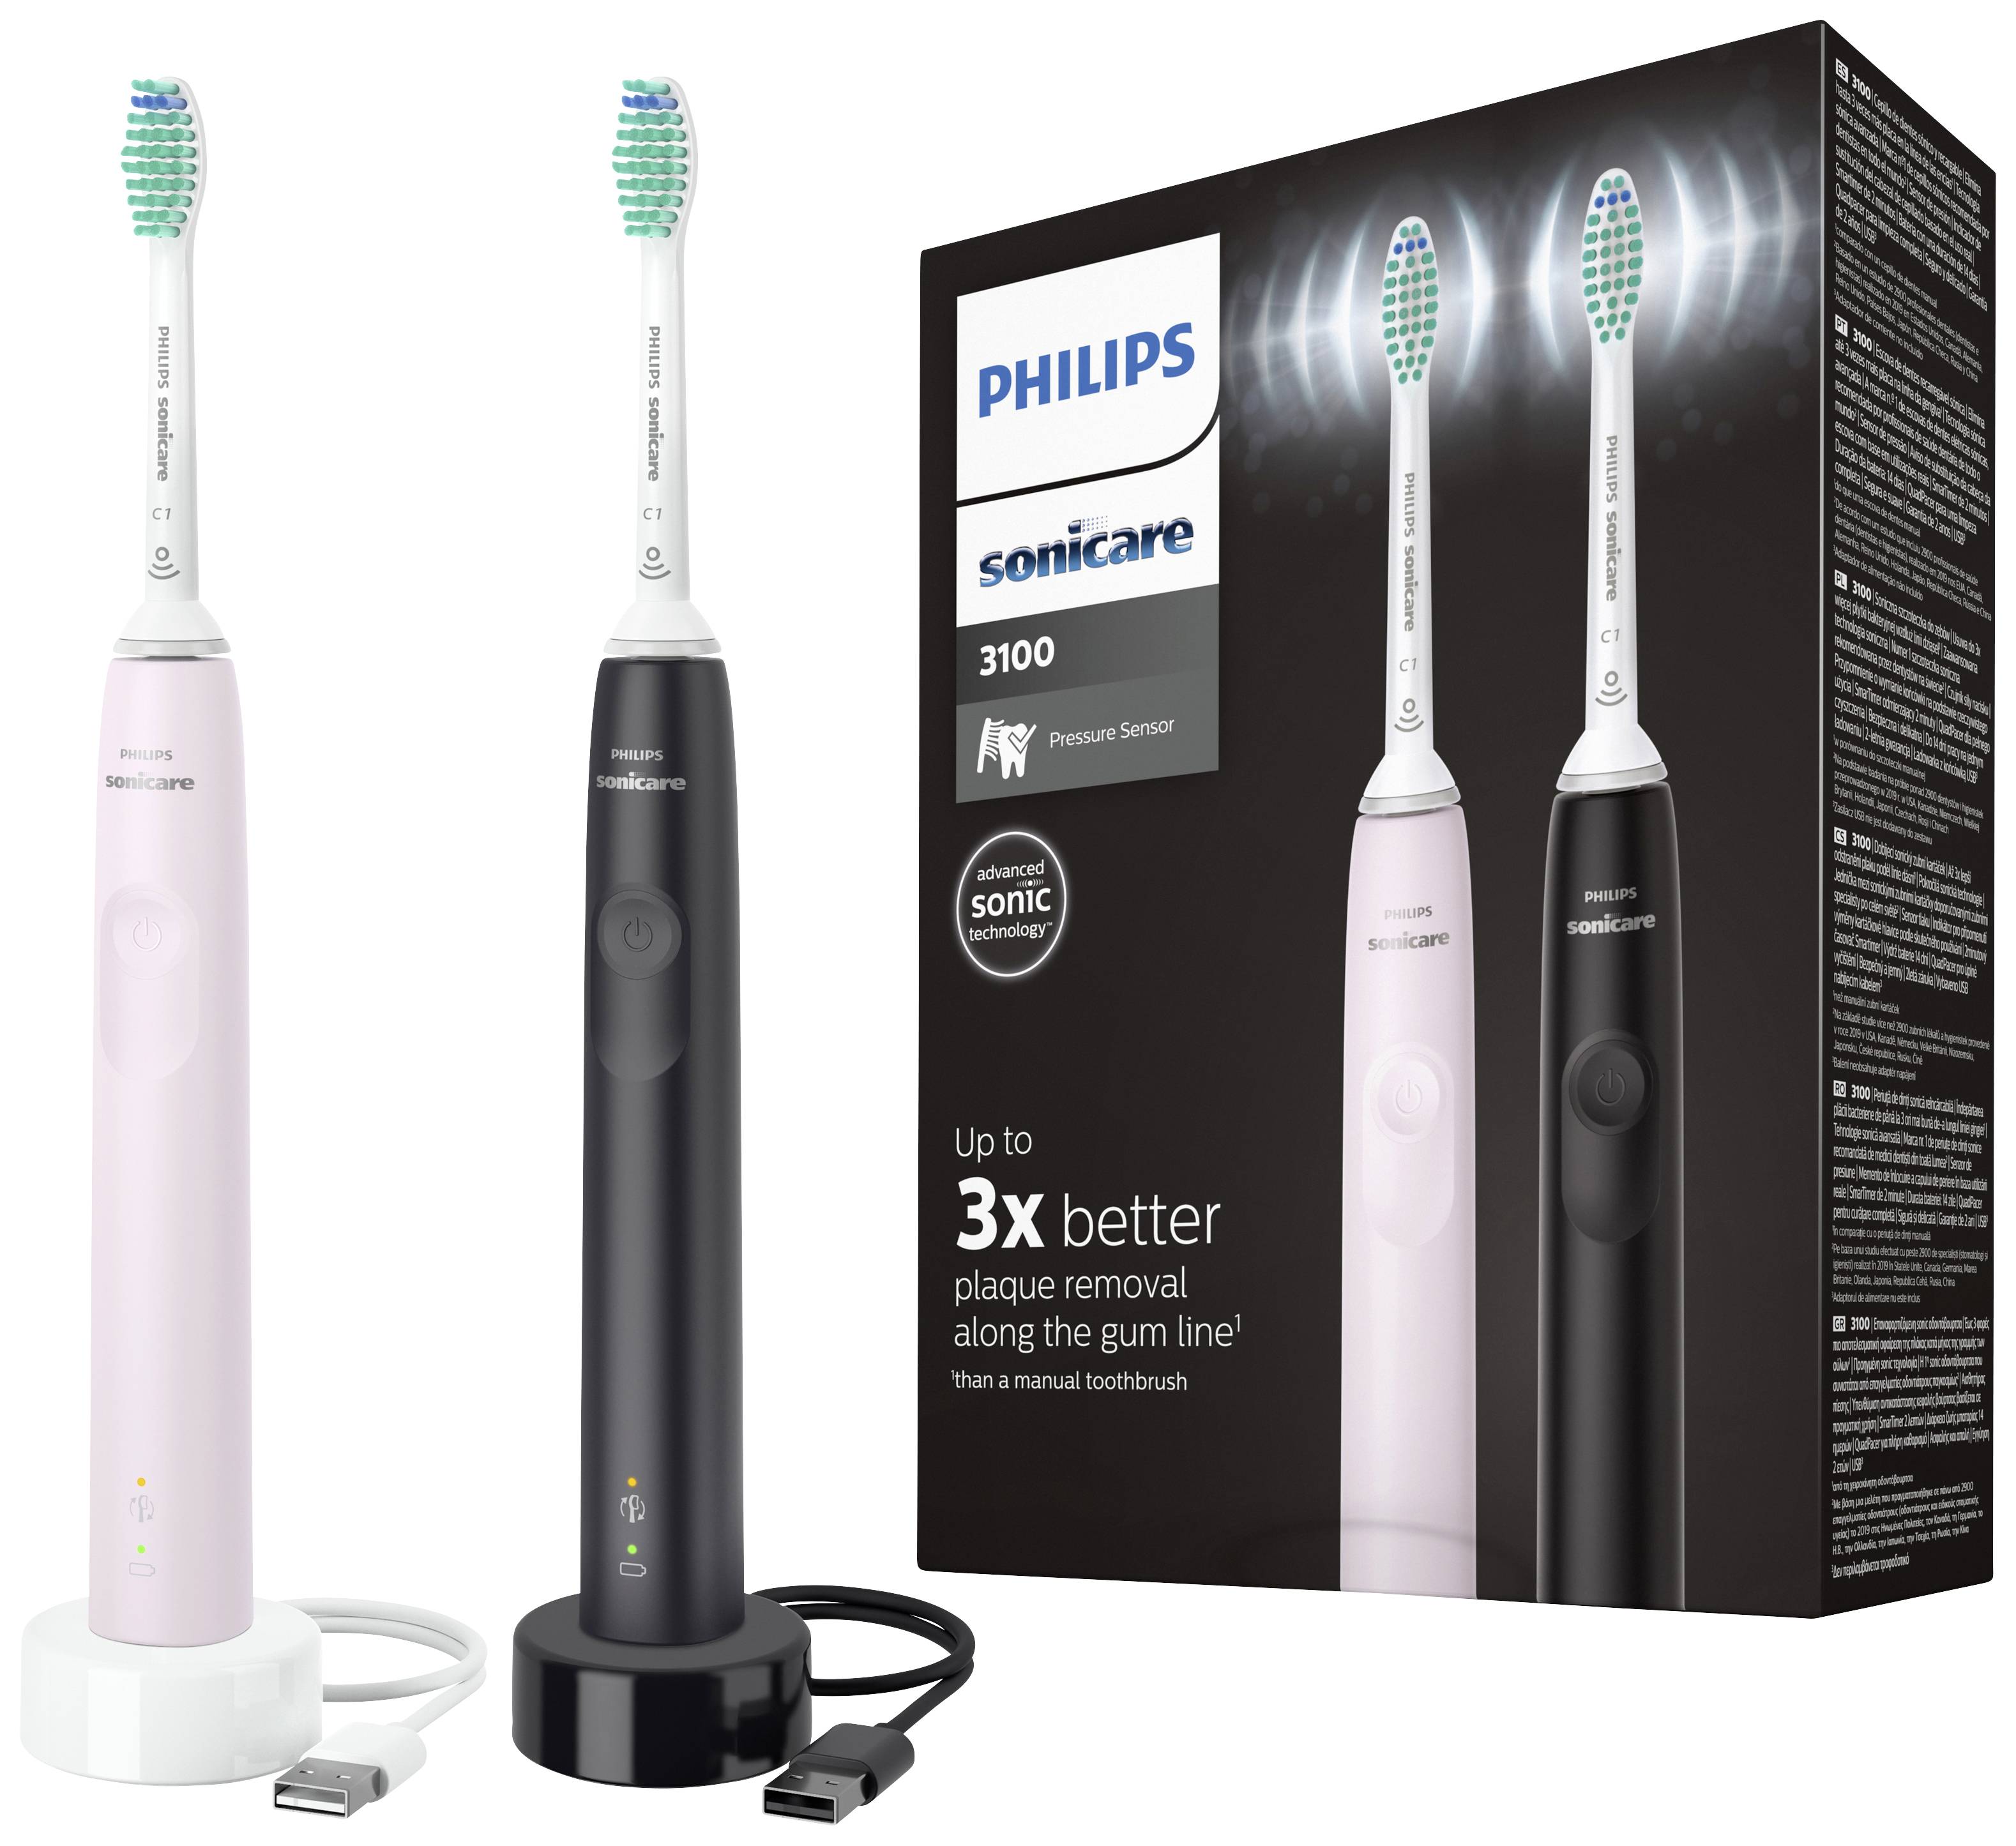 Philips Sonicare für eine bessere Zahnpflege